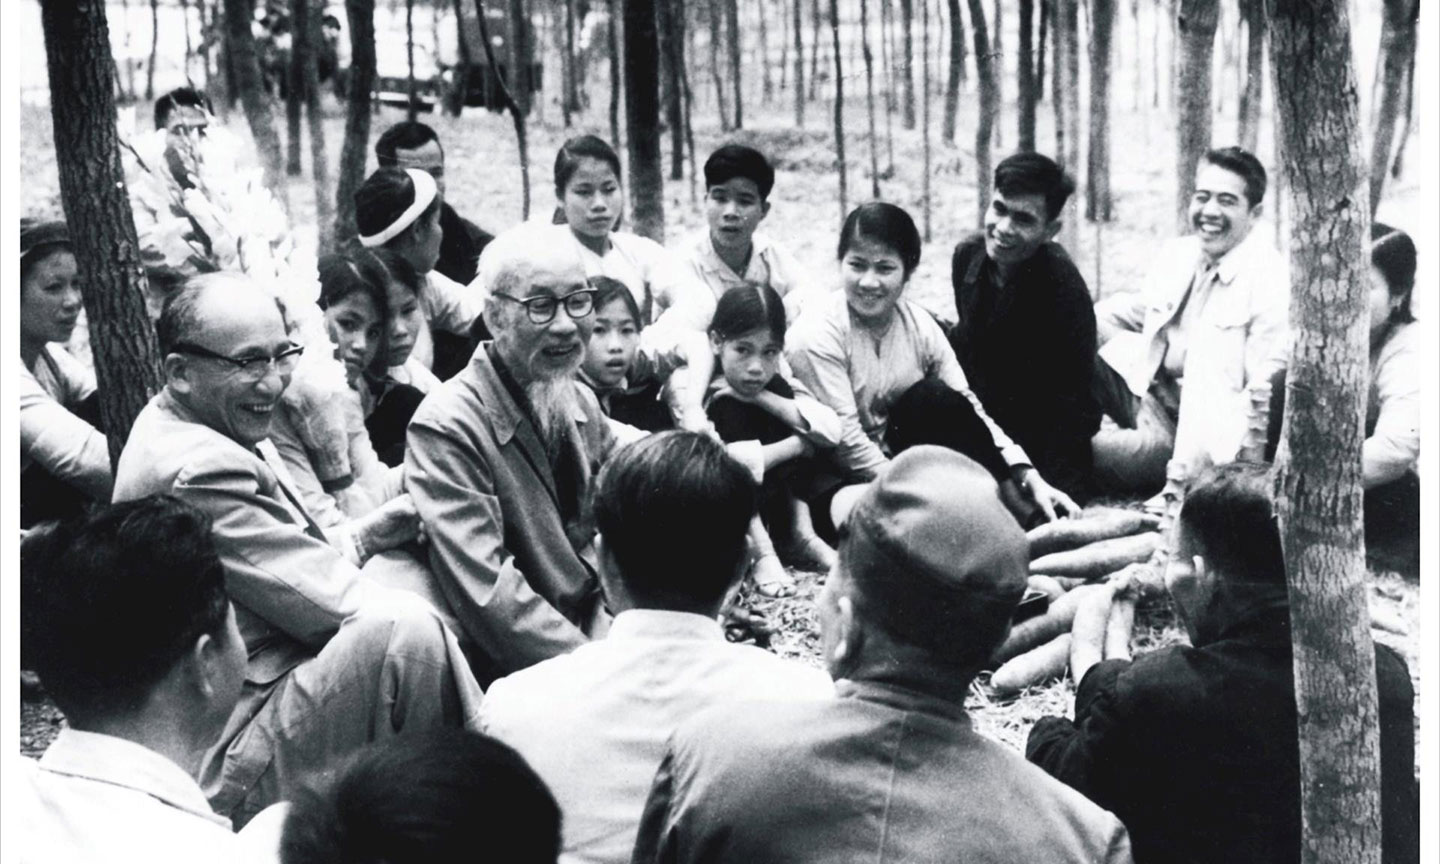 Đồng chí Nguyễn Lương Bằng ngồi bên tay phải Chủ tịch Hồ Chí Minh trong chuyến thăm, chúc tết nhân dân xã Vật Lại, huyện Ba Vì, tỉnh Hà Tây năm 1969, tức Mùng 1 Tết Kỷ Dậu (ảnh tư liệu).